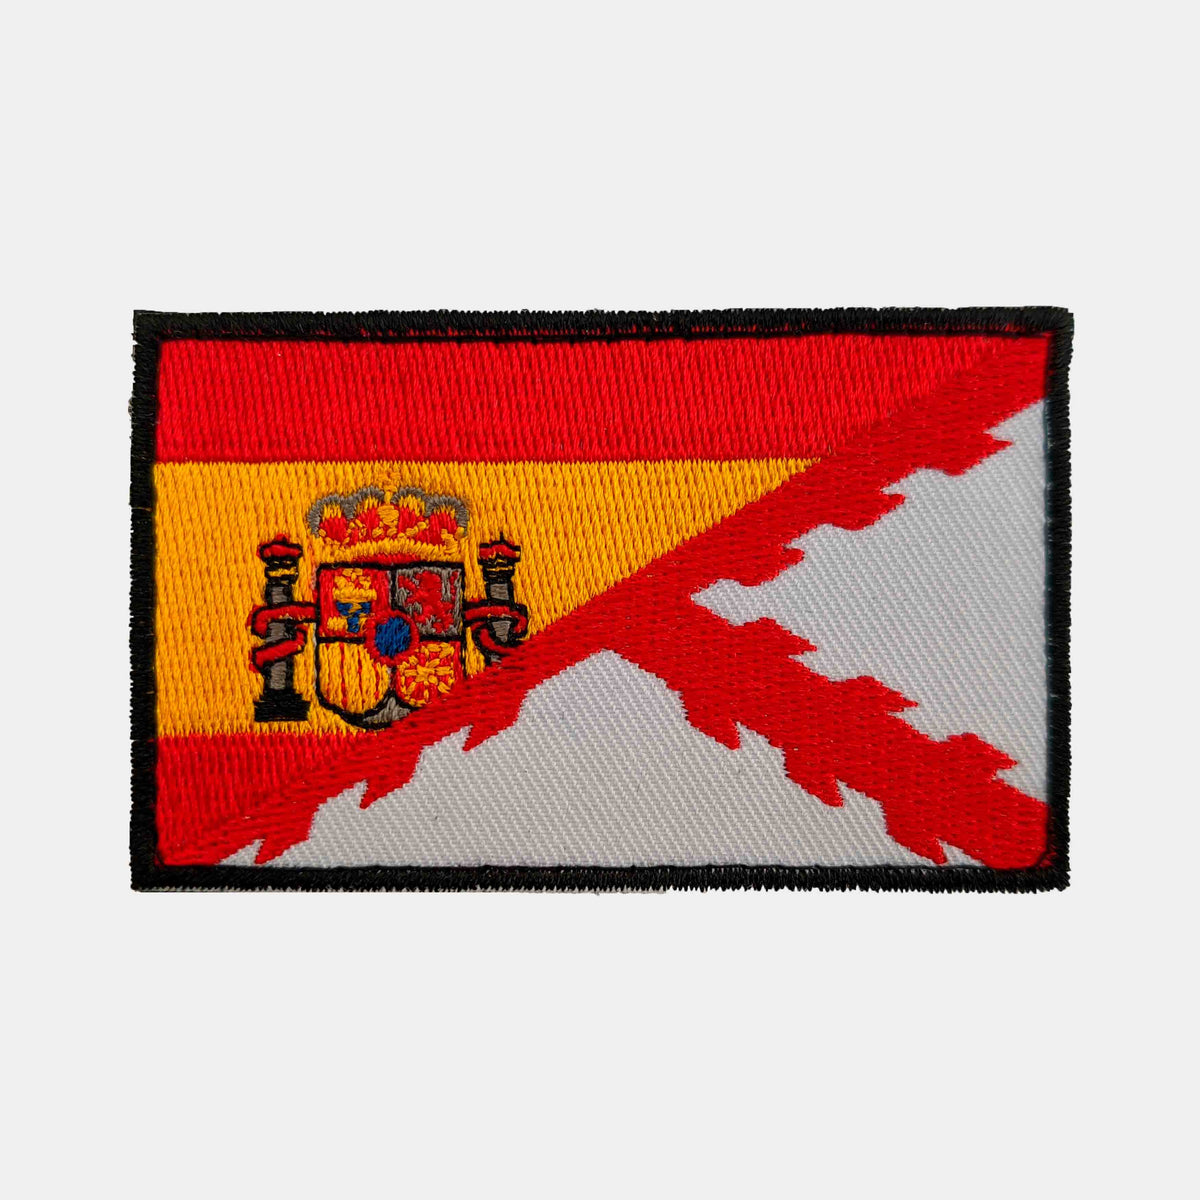 Parche Bandera España uniforme